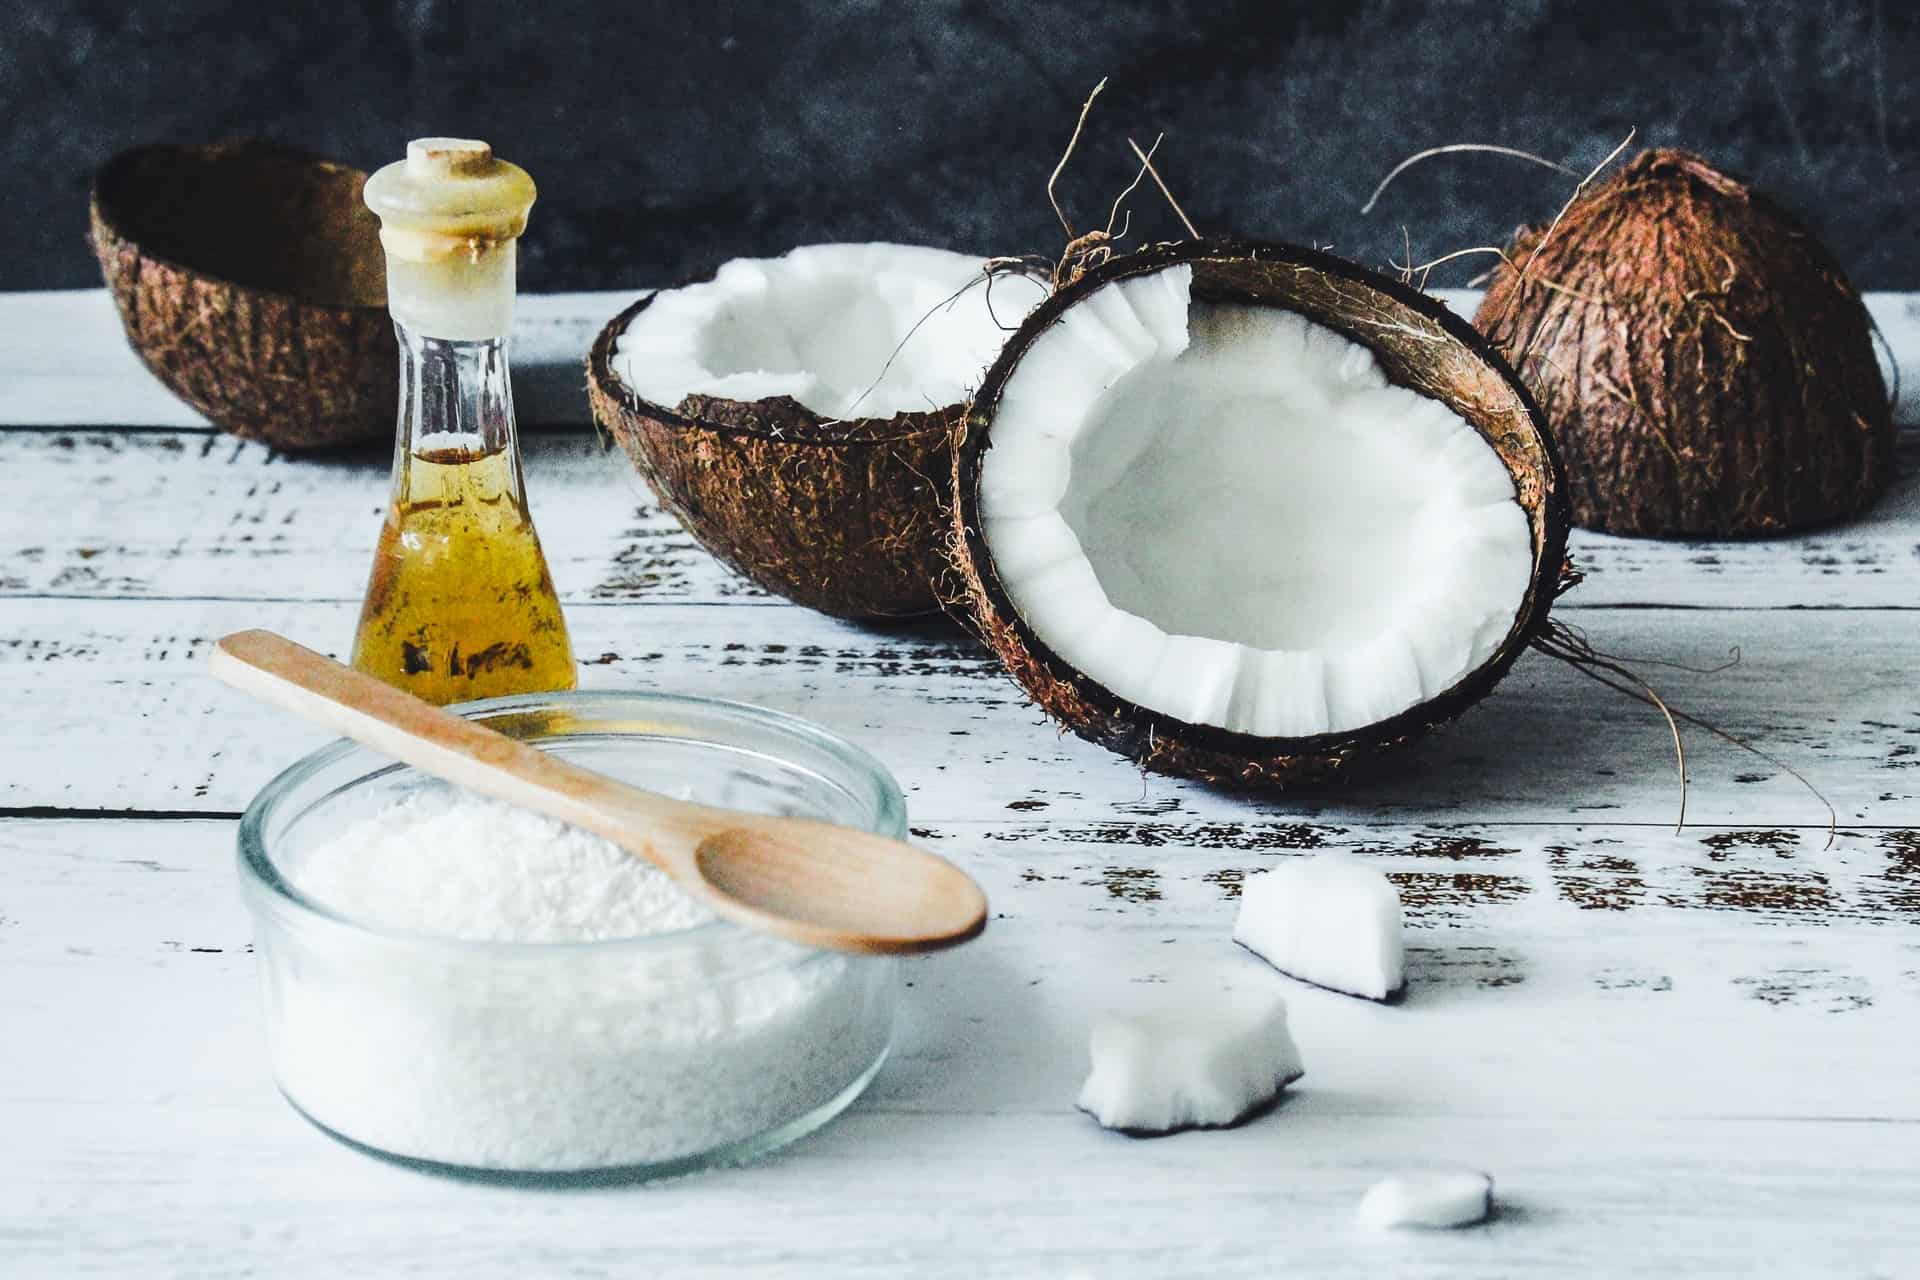 Olej kokosowy – jak go używać, by mieć piękną skórę i włosy?